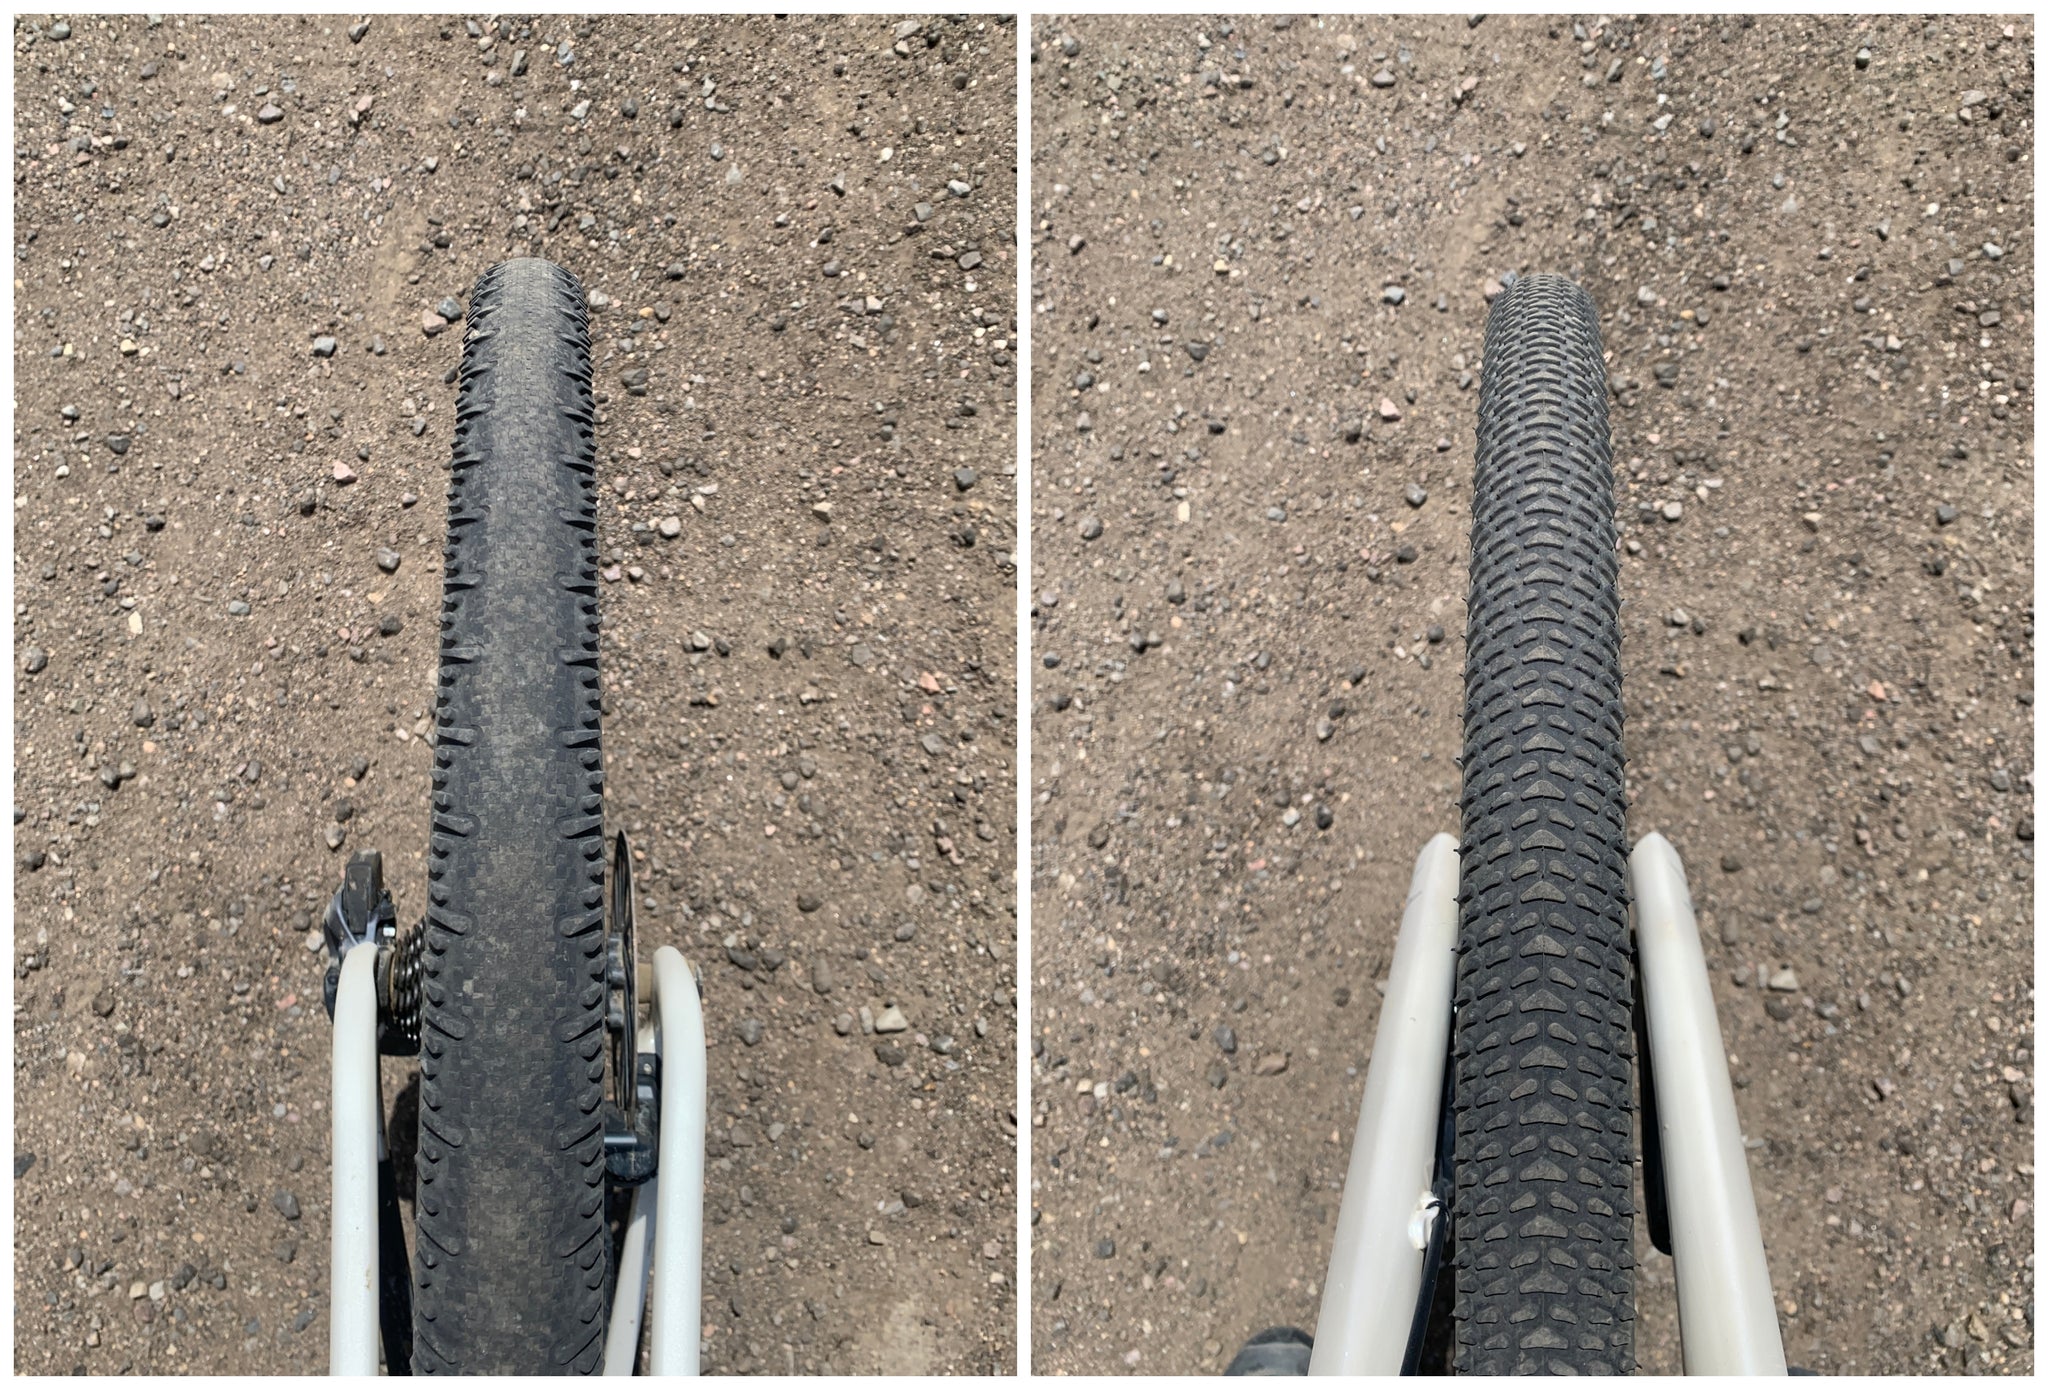 Unbound gravel tire tread patterns Schwalbe G-One R RS